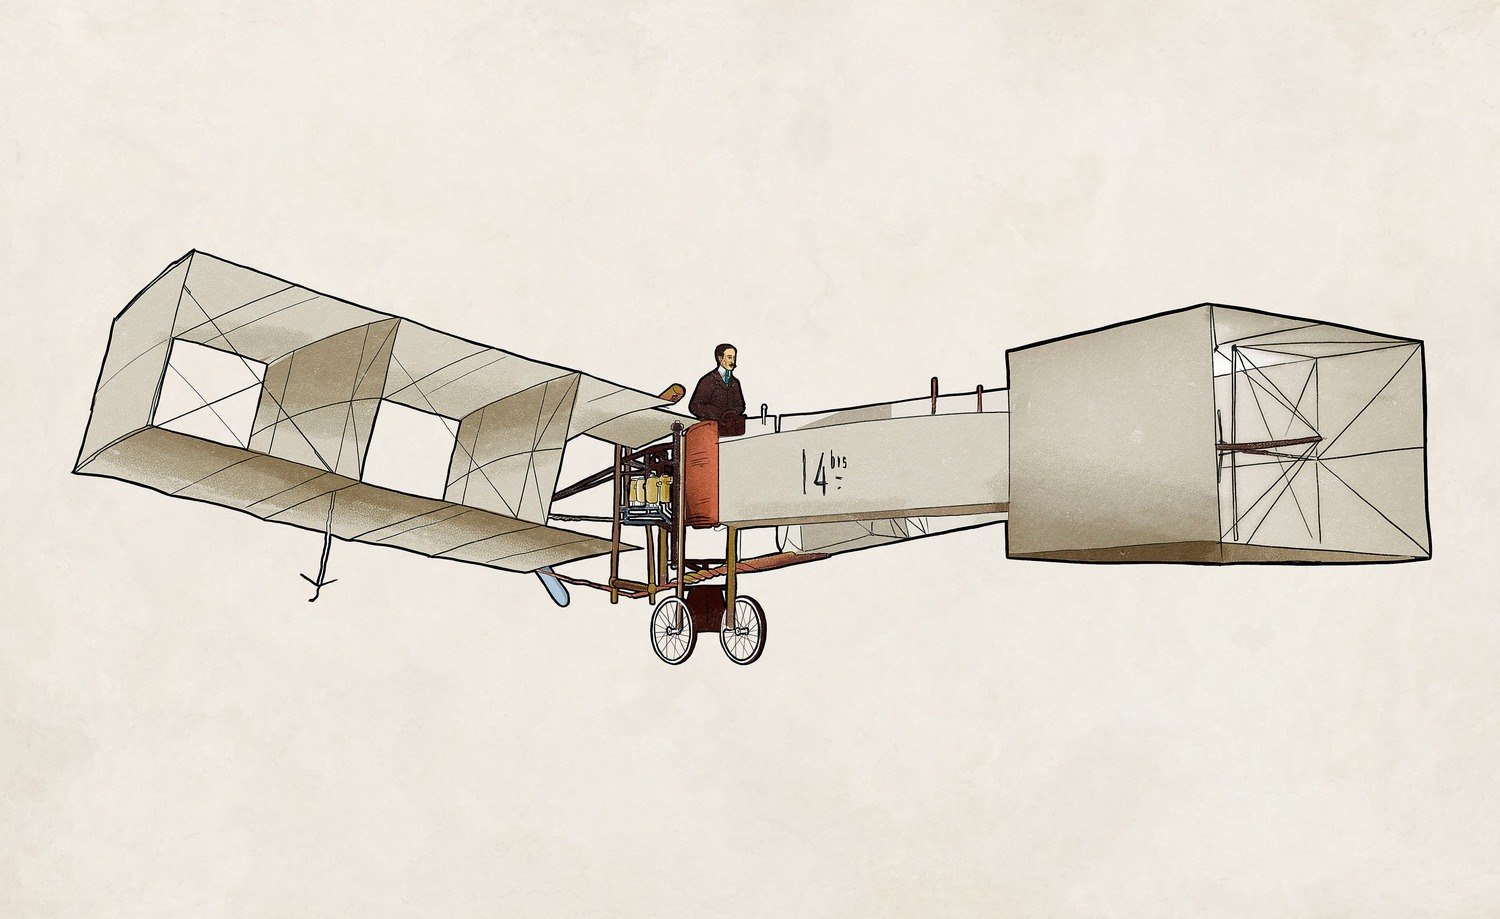 Embraer: livro em homenagem aos 150 anos de Santos-Dumont

